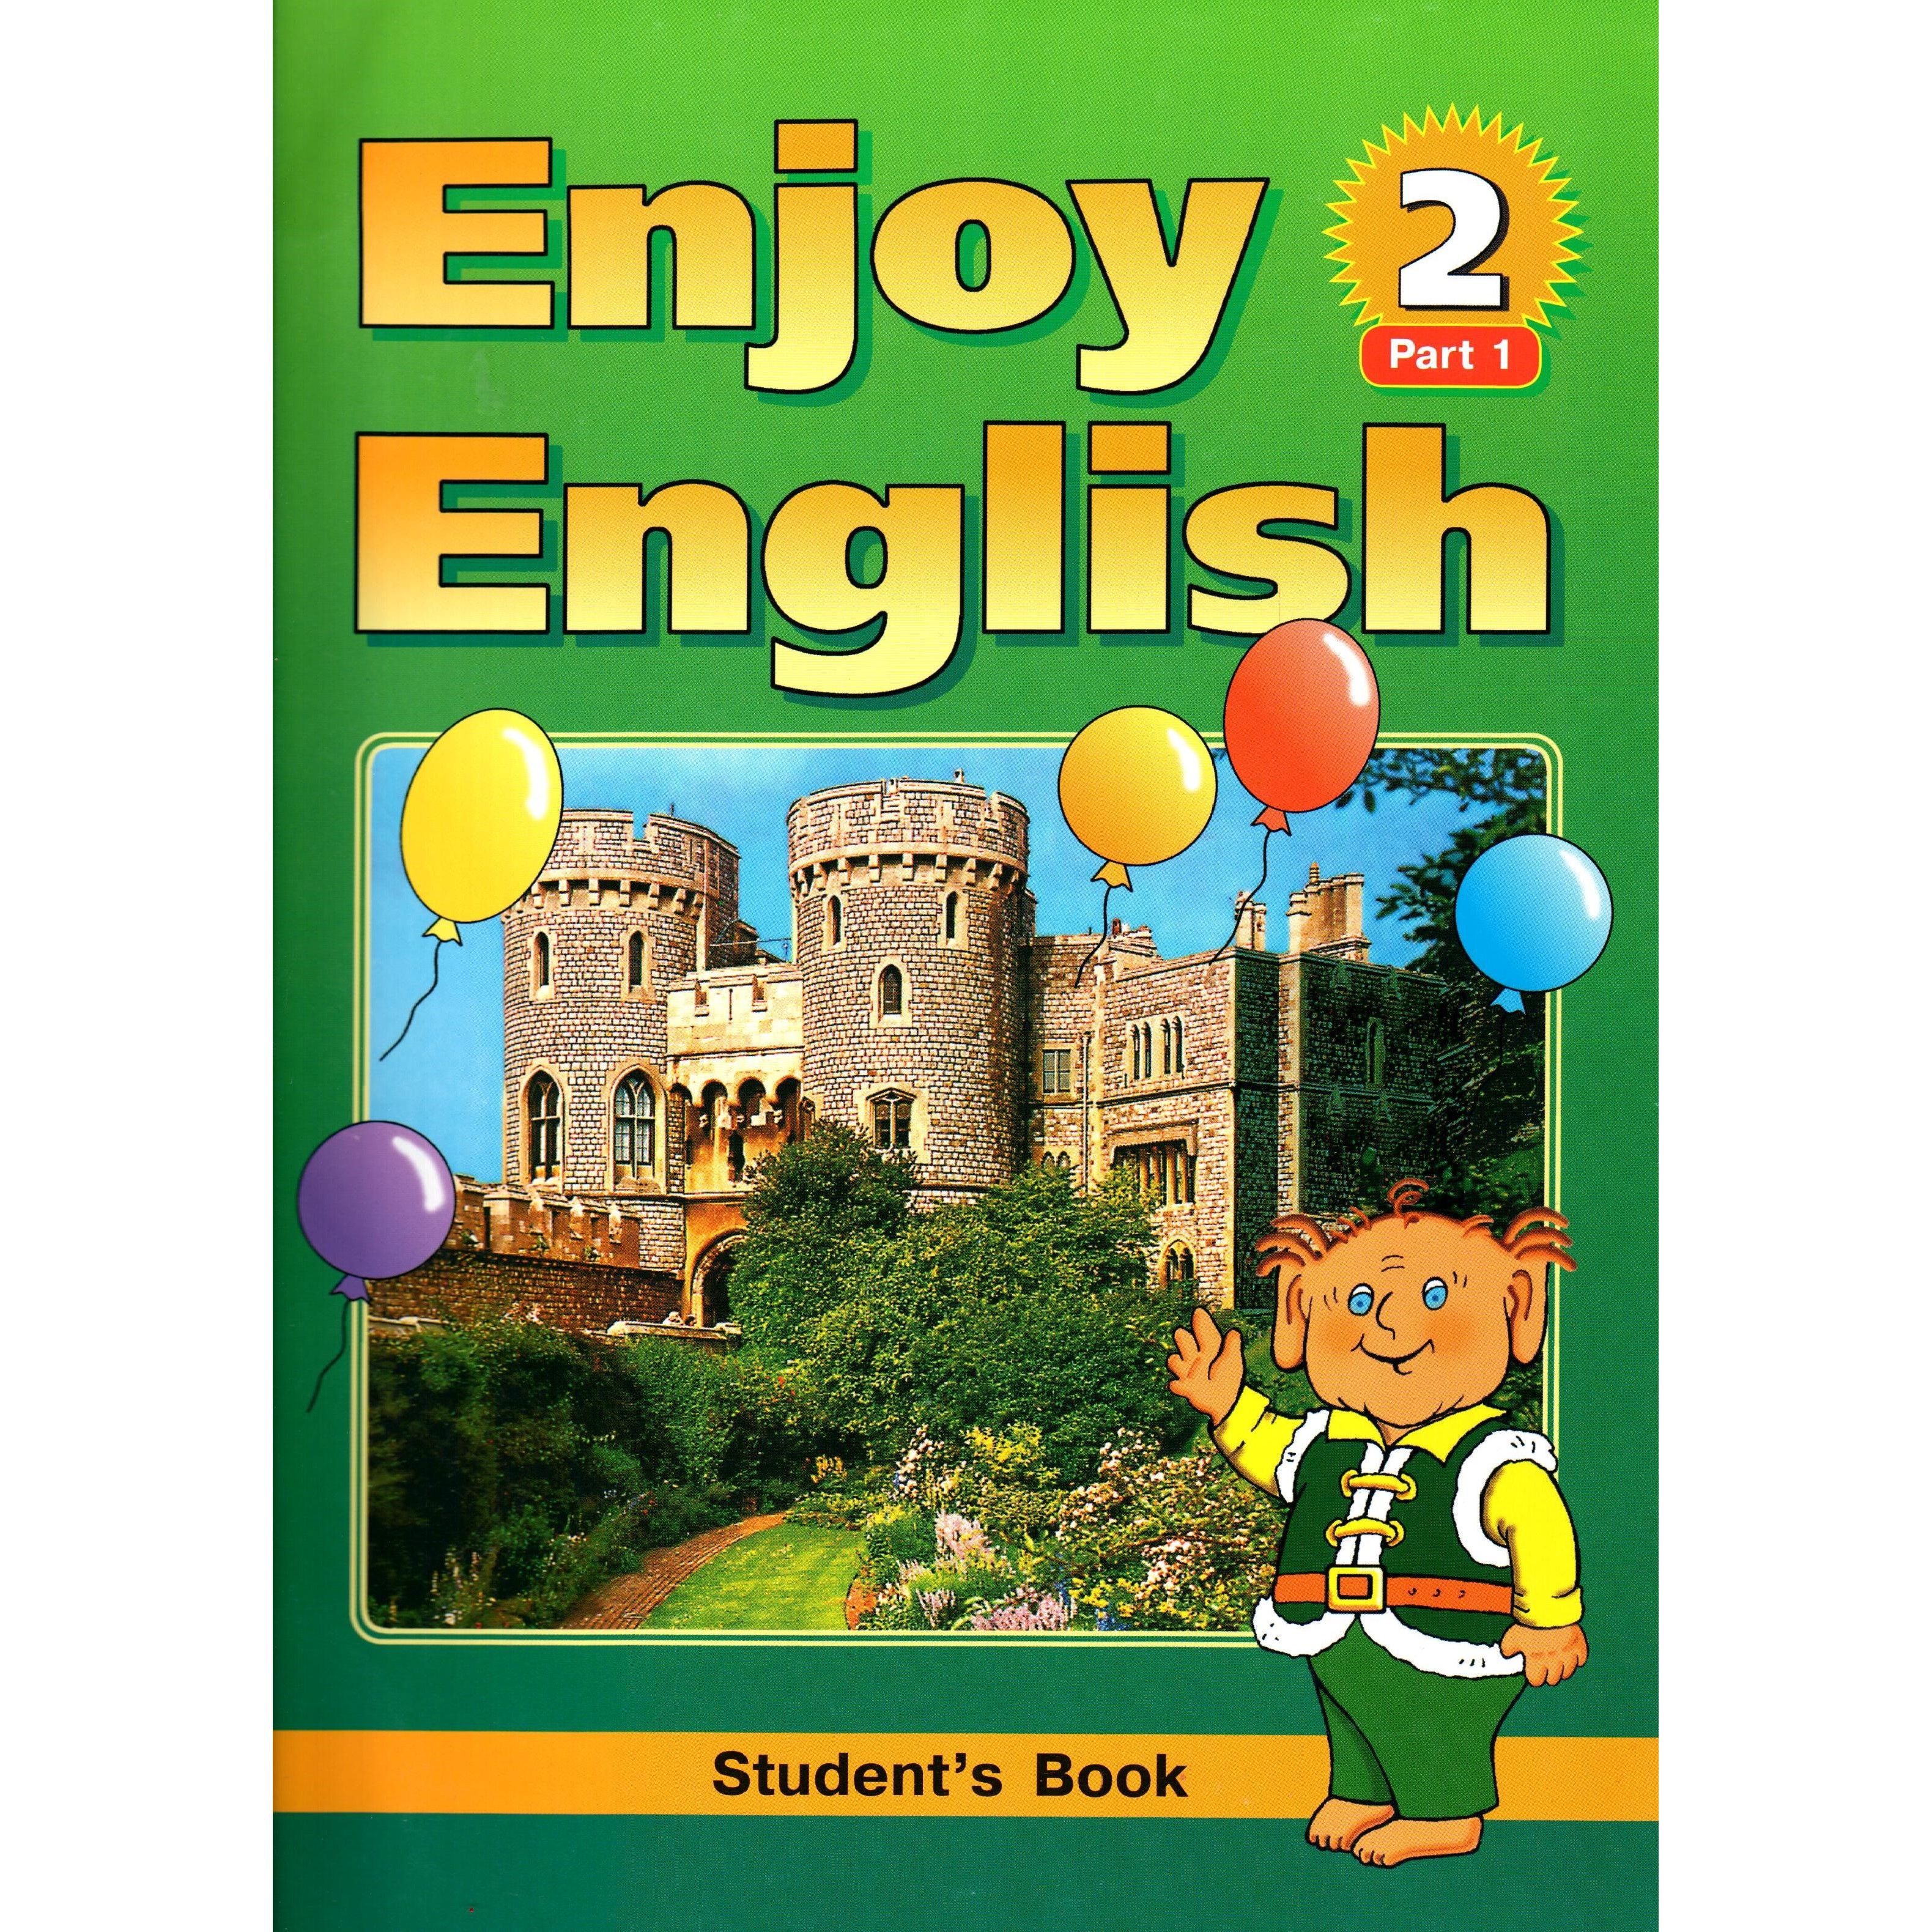 Английский 10 11 класс биболетова. Учебник английского. Валлийский язык учебник. Учебник по английскому языку. Учебник англисгогоязыка.